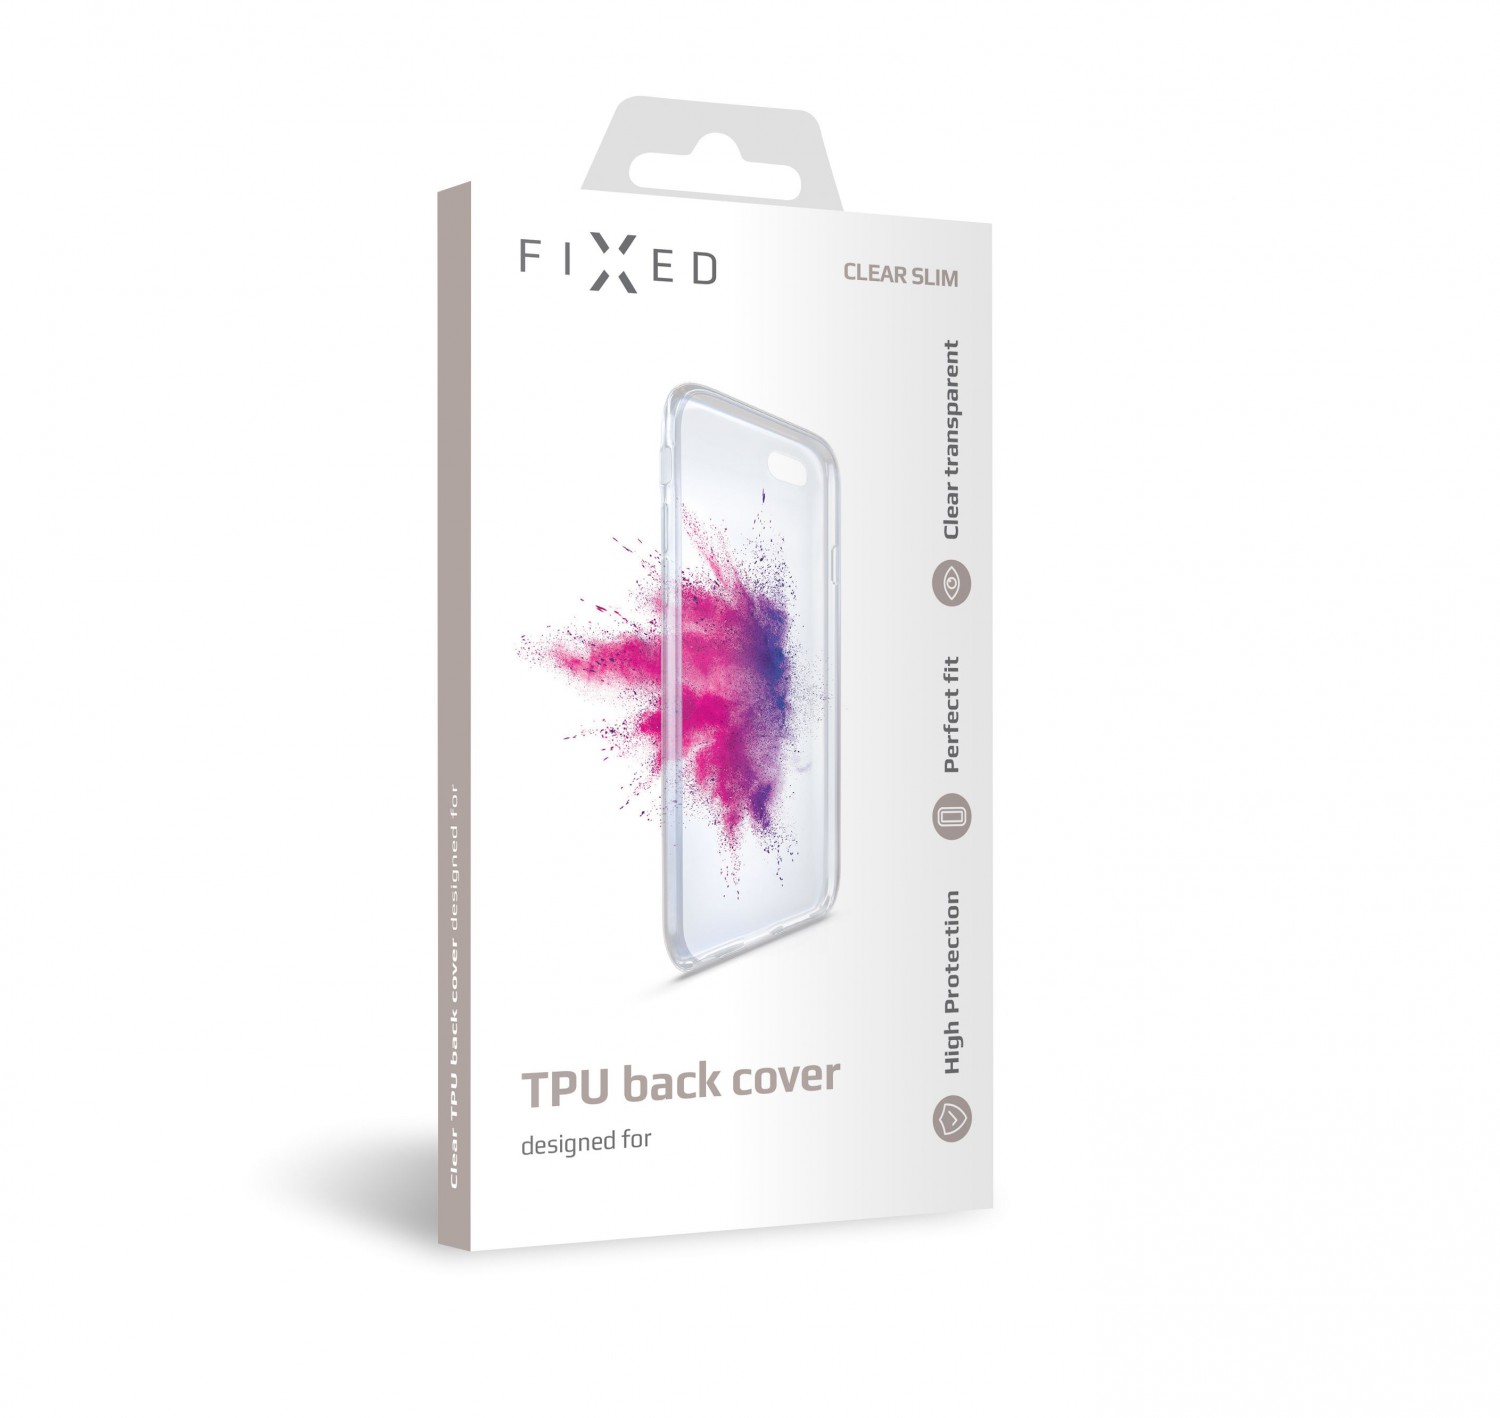 Silikonové pouzdro FIXED pro Samsung Galaxy Xcover Pro, transparentní